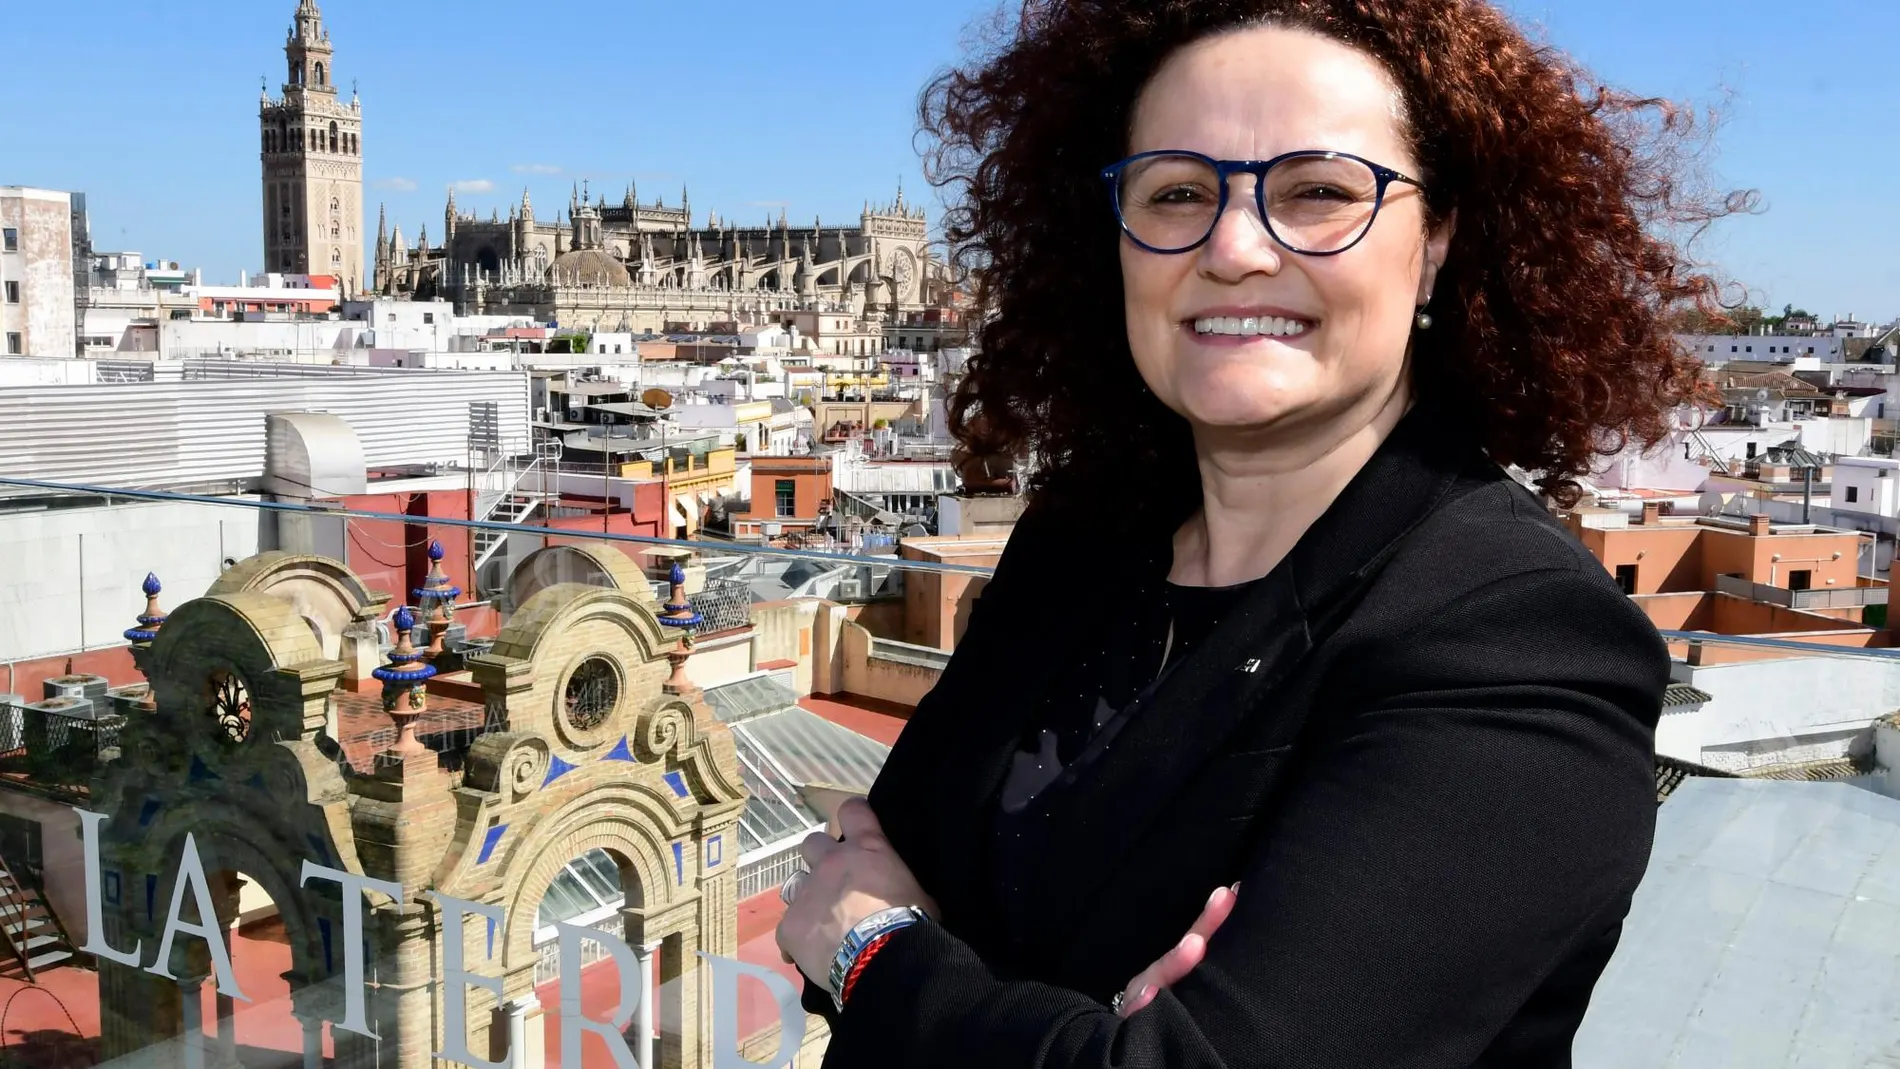 La consejera delegada de Axa, durante su visita a Sevilla / Foto: Ke-Imagen